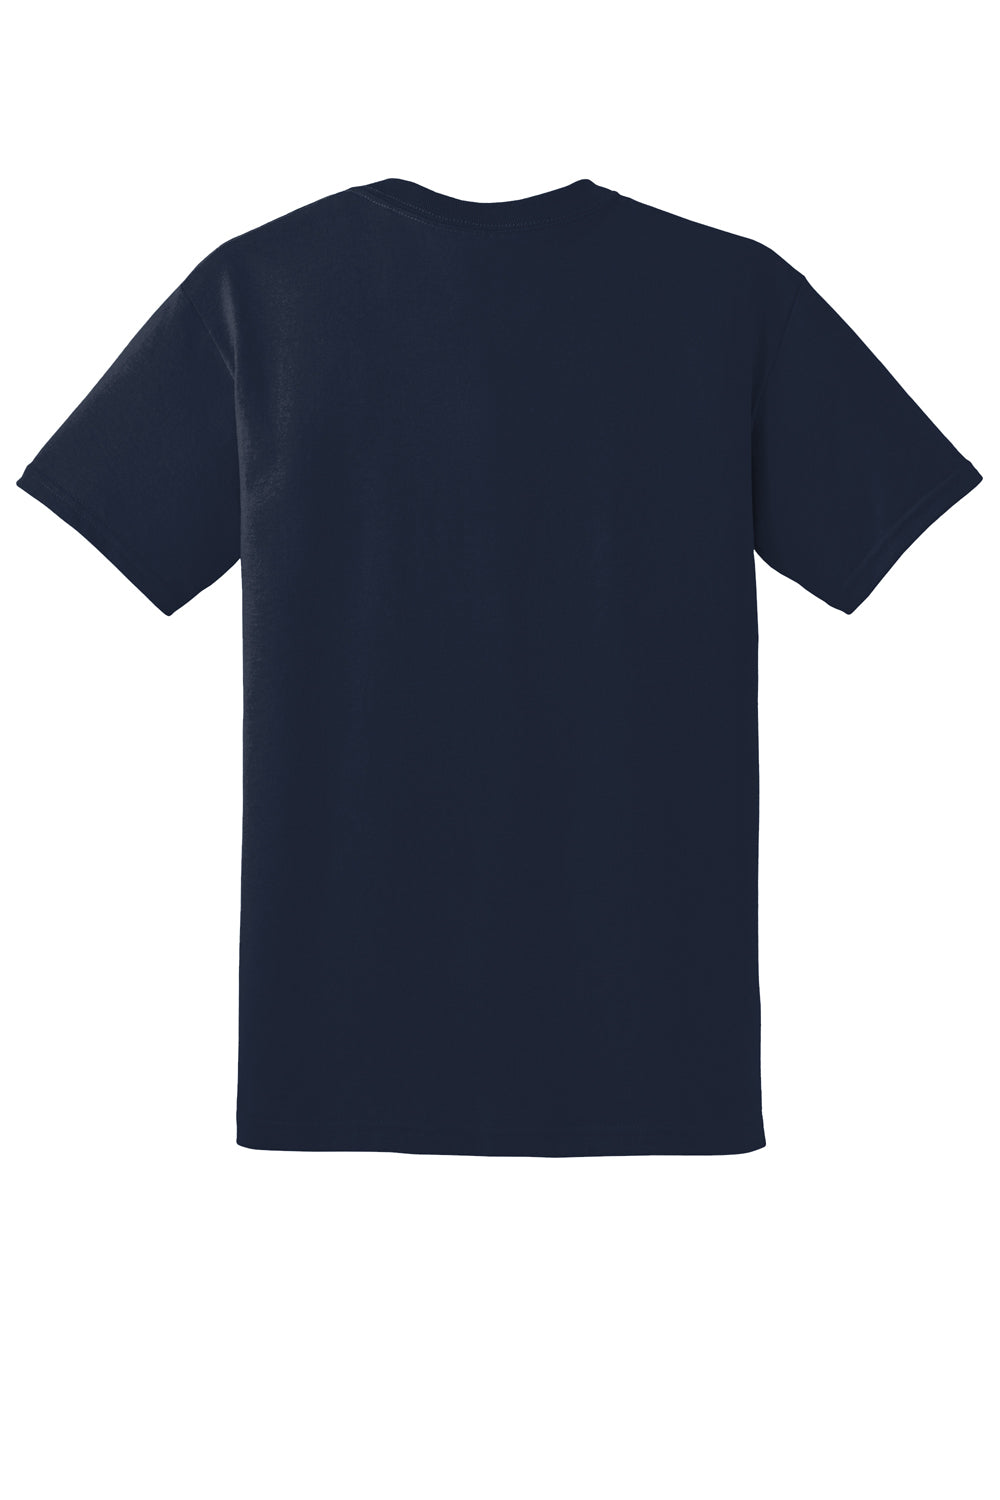 Gildan 8000/G800 Mens DryBlend Moisture Wicking Short Sleeve Crewneck T-Shirt Sport Dark Navy Blue Flat Back